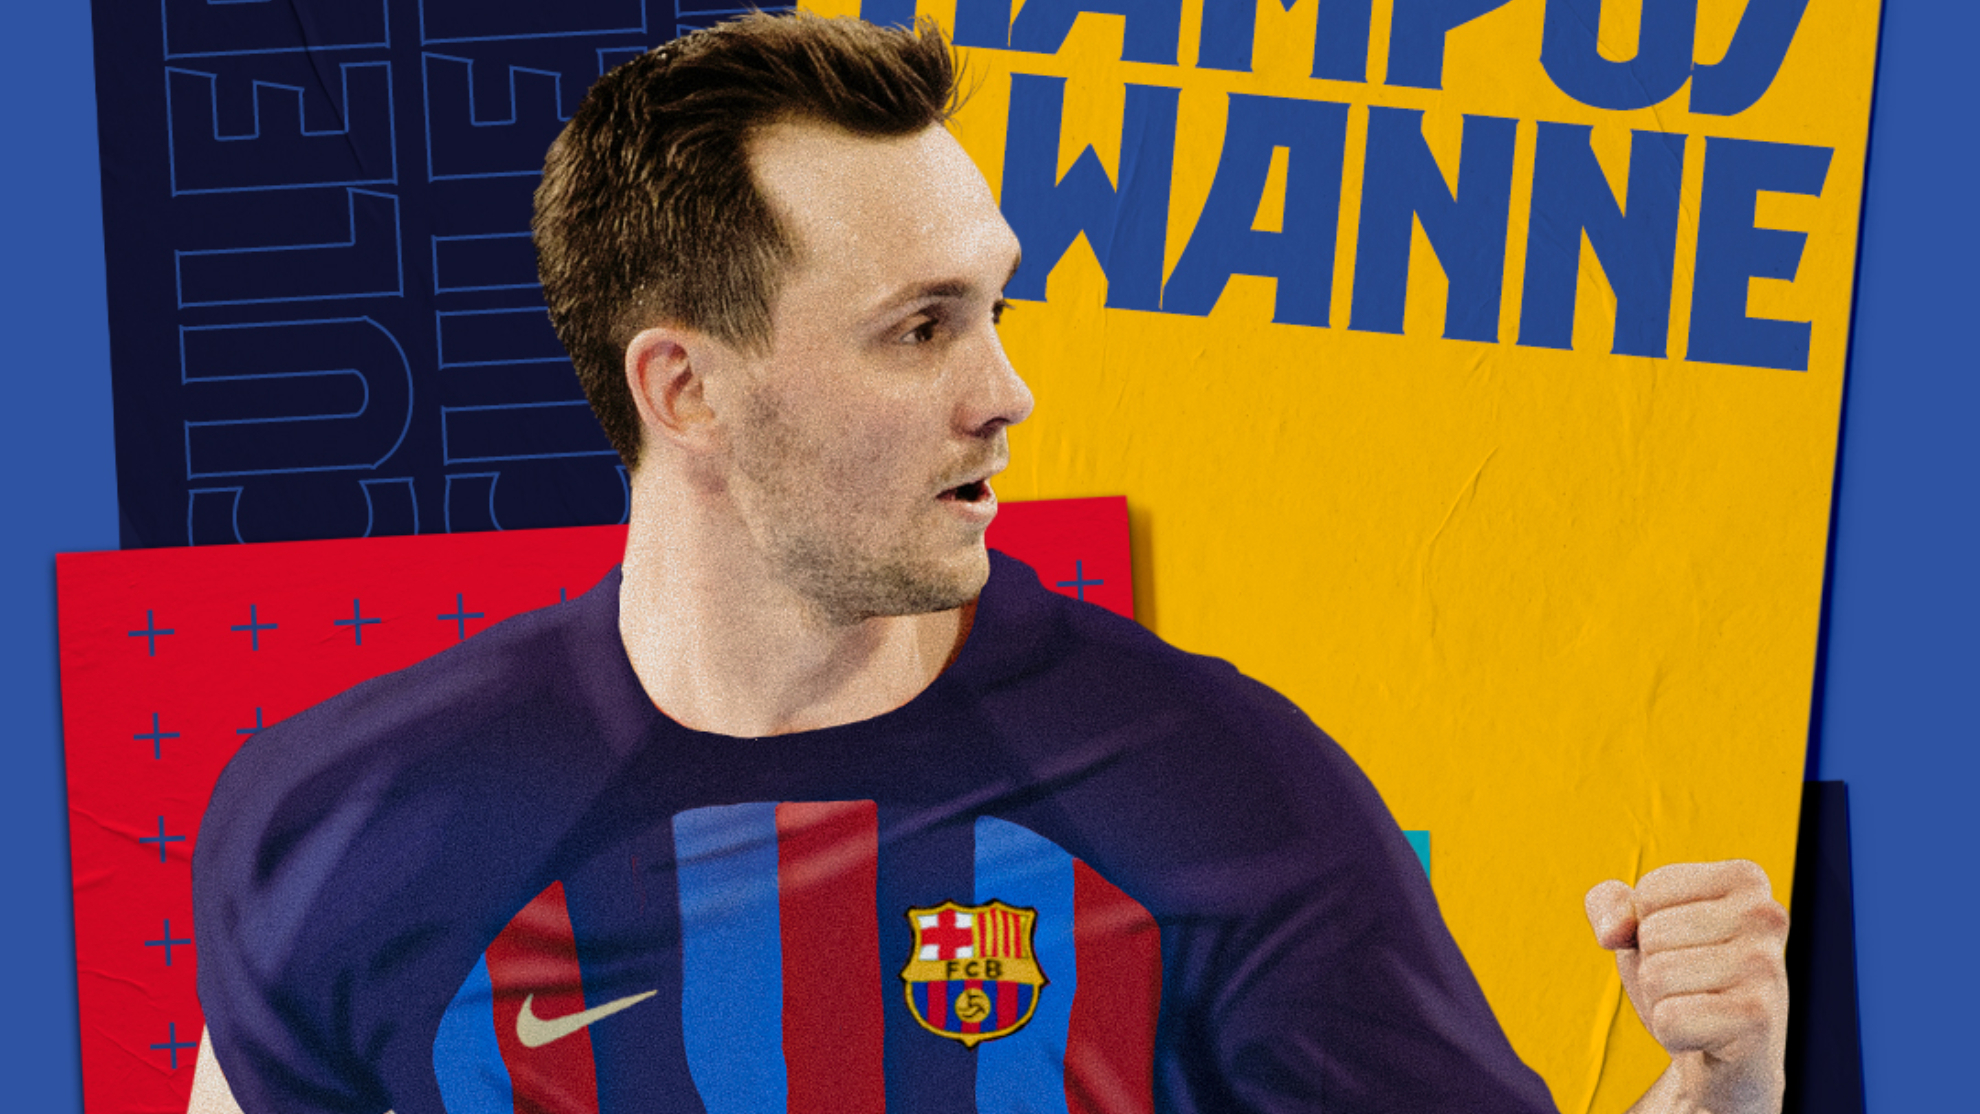 El extremo internacional sueco Wanne, primer fichaje del Barça